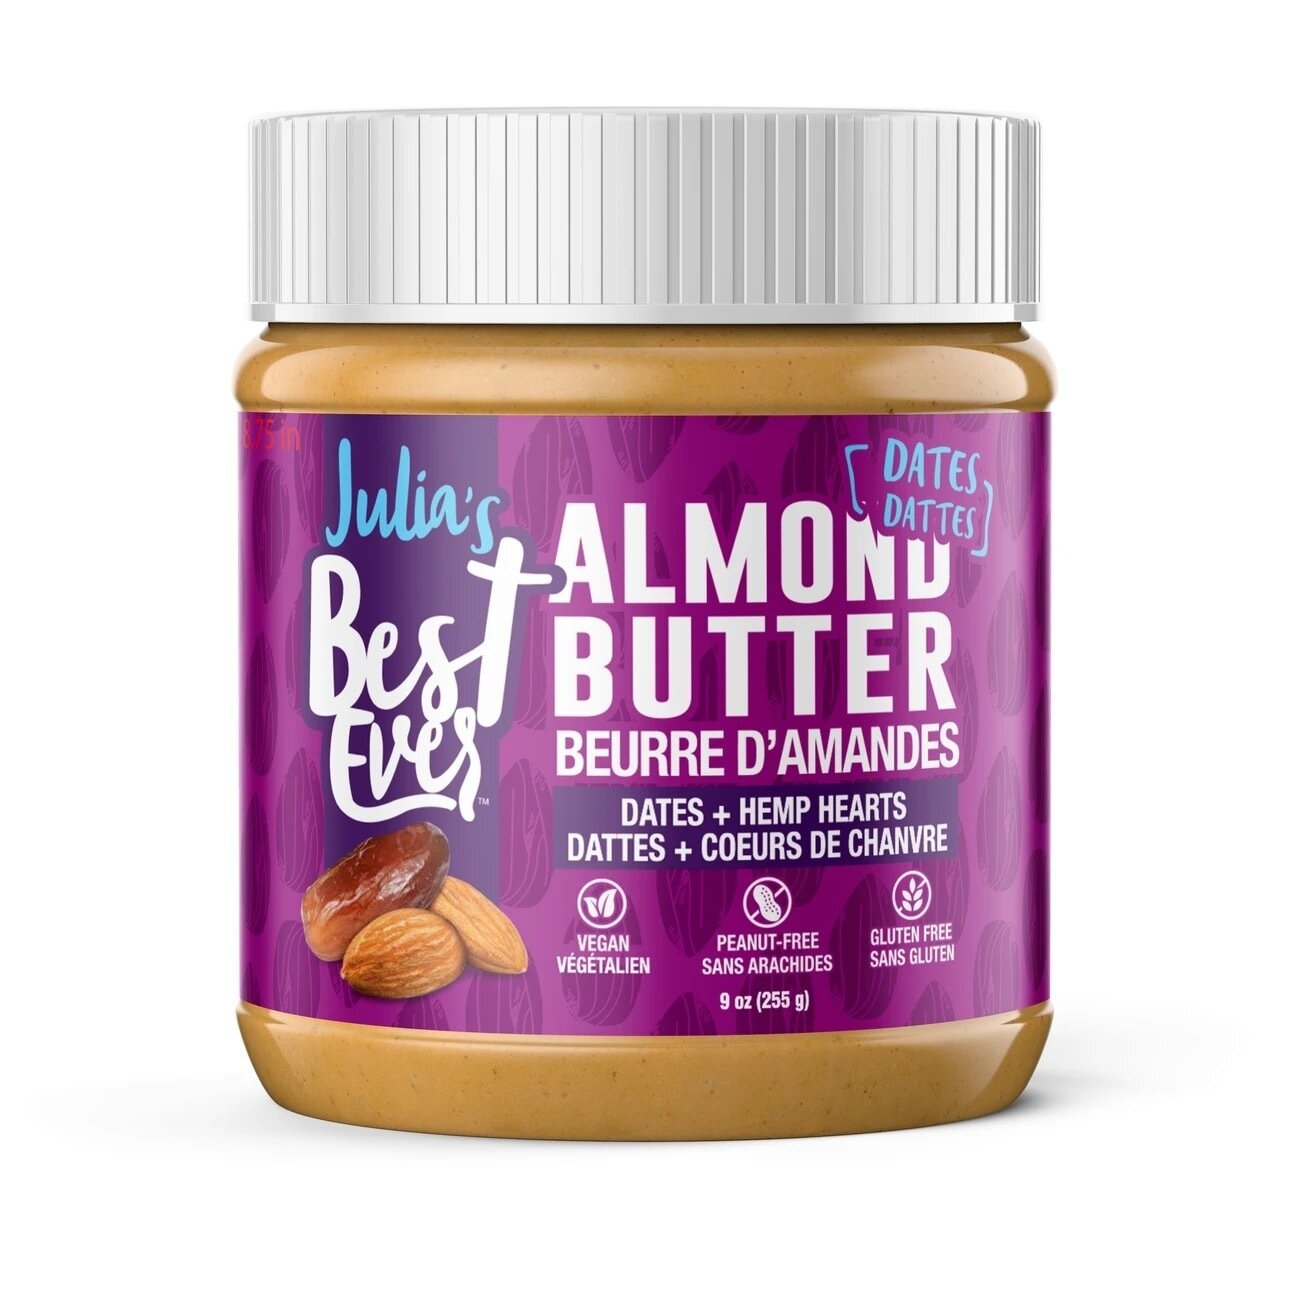 Julia's Best Ever Almonds Dates Butter